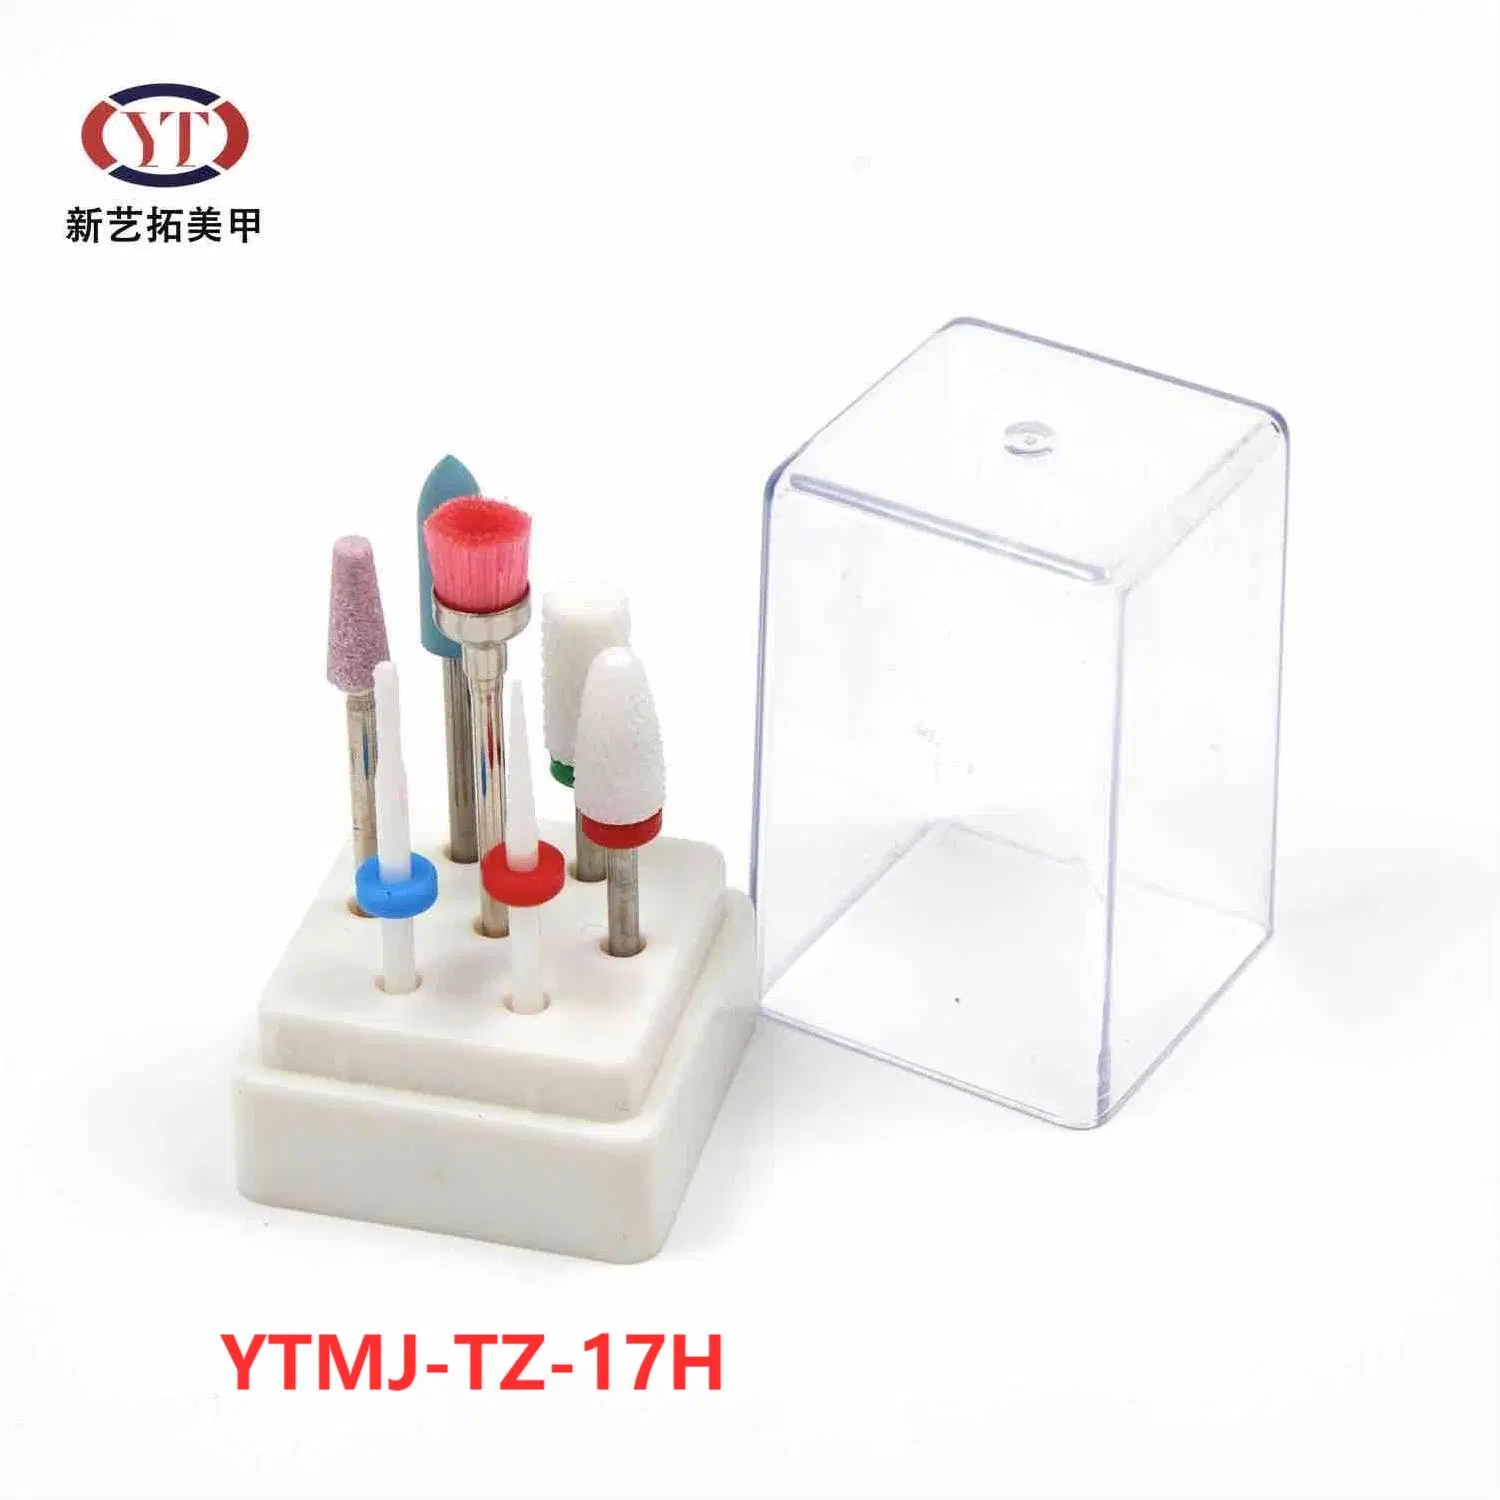 Ytmj-Tz-17h 7PCS Clou en céramique en carbure de tungstène Forets Set manucure pédicure électrique Burr forets Bit de broyage de fichier